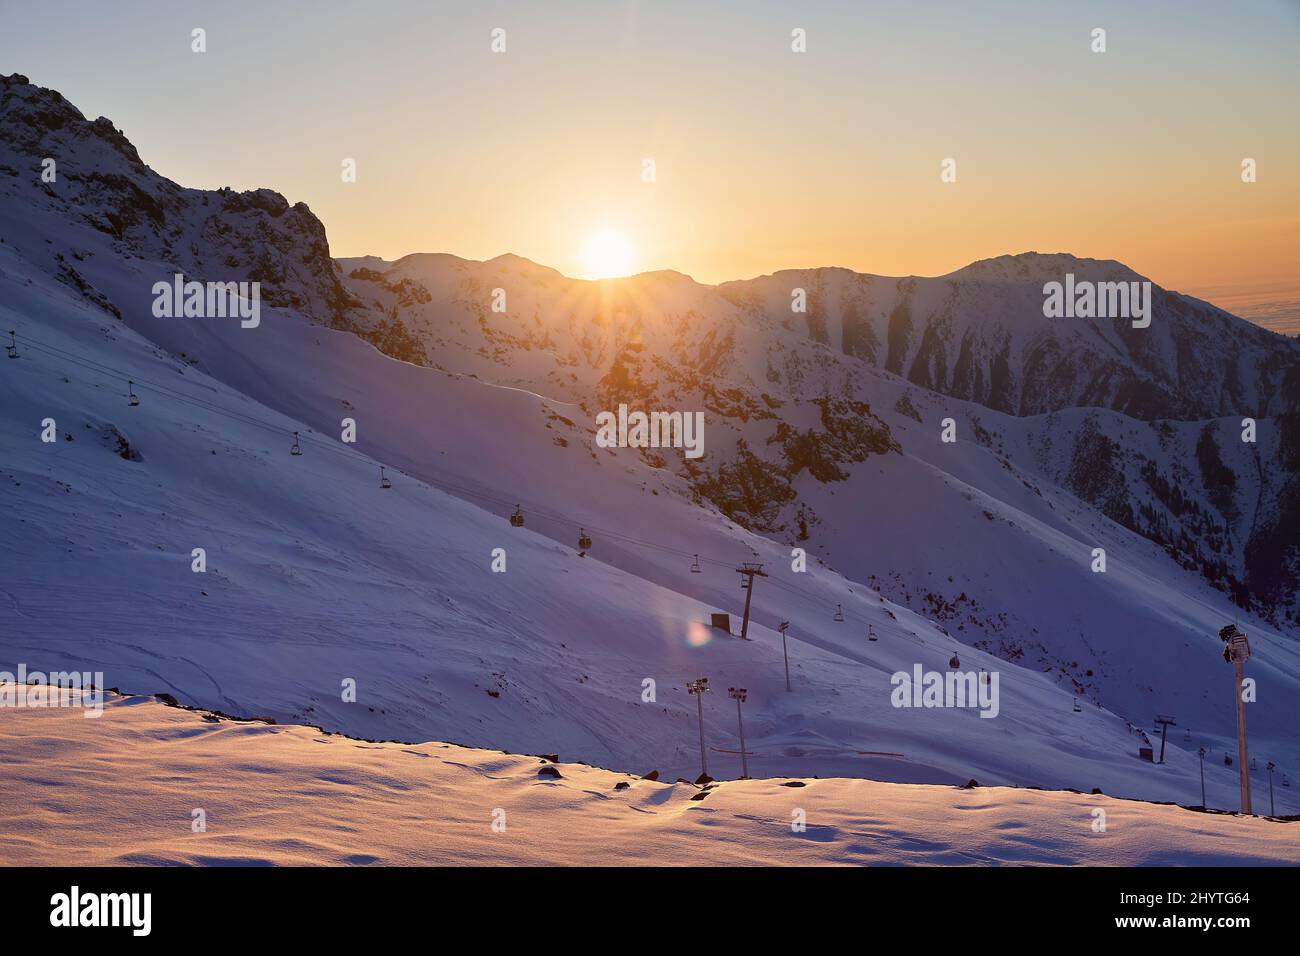 Bellissimo paesaggio Shymbulak montagna resort nevoso neve vuota pista da sci e funivia ascensore al tramonto arancione cielo bagliore in Almaty, Kazakistan. Foto Stock